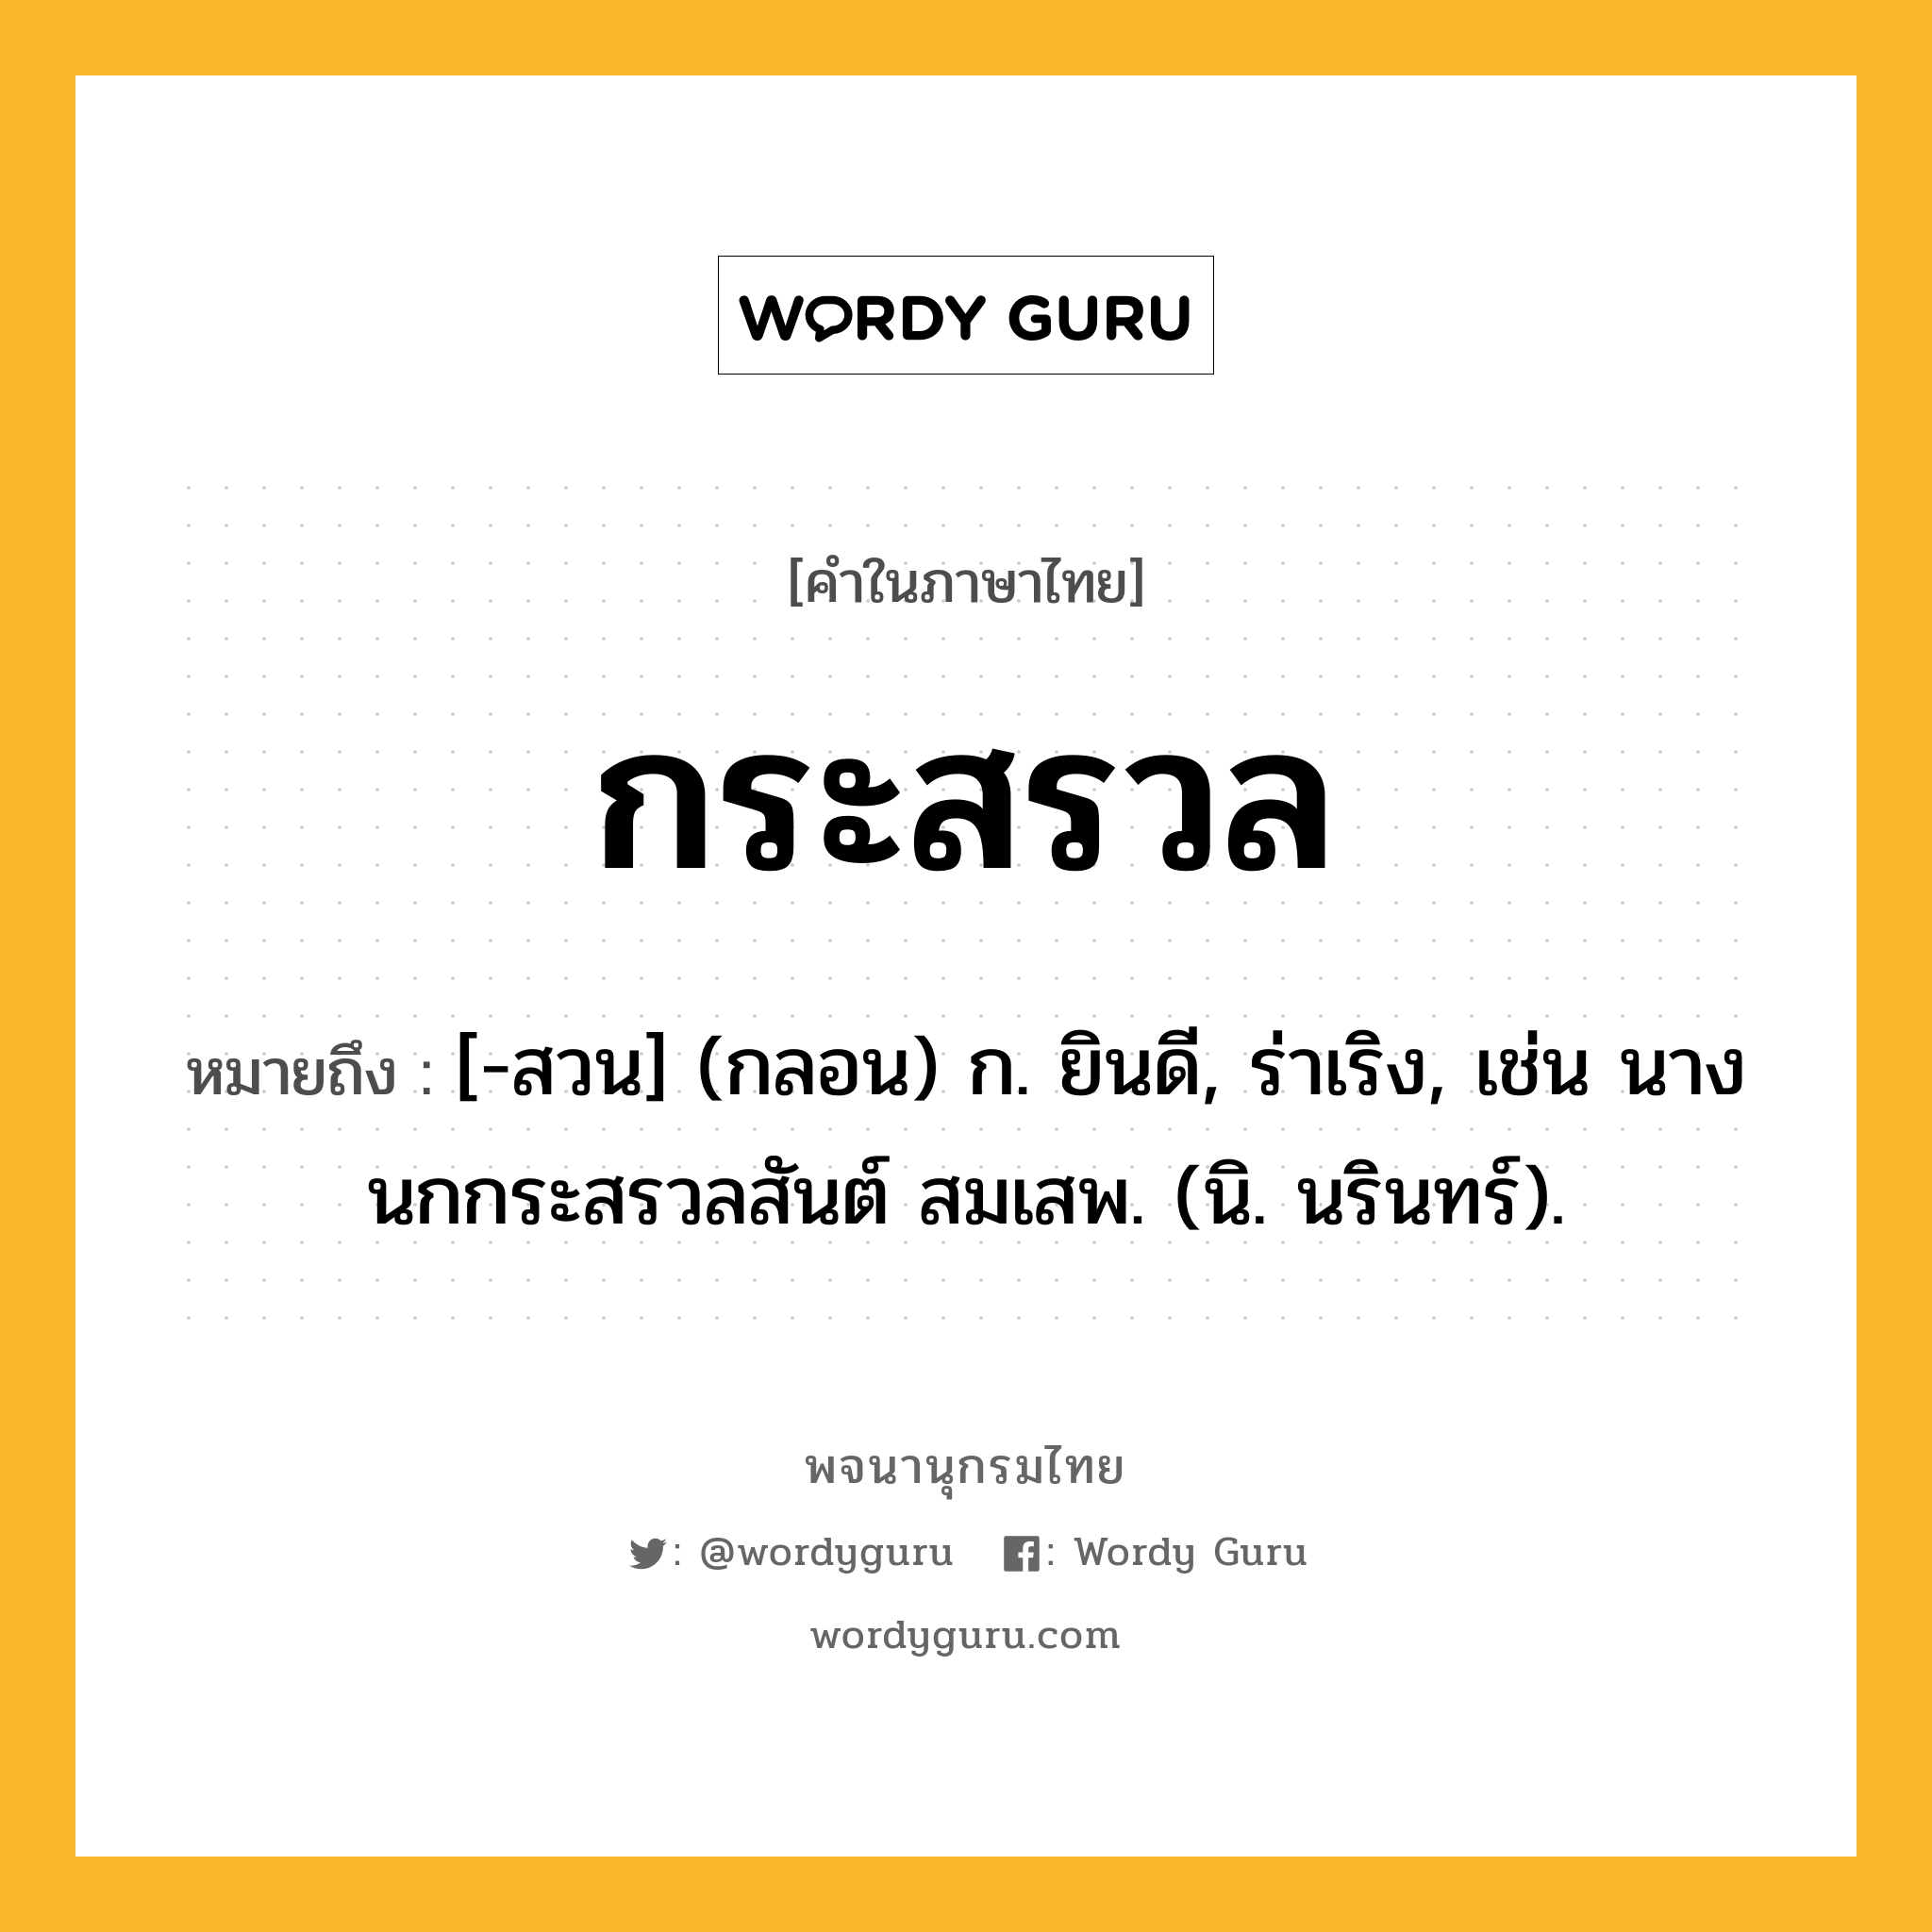 กระสรวล ความหมาย หมายถึงอะไร?, คำในภาษาไทย กระสรวล หมายถึง [-สวน] (กลอน) ก. ยินดี, ร่าเริง, เช่น นางนกกระสรวลสันต์ สมเสพ. (นิ. นรินทร์).